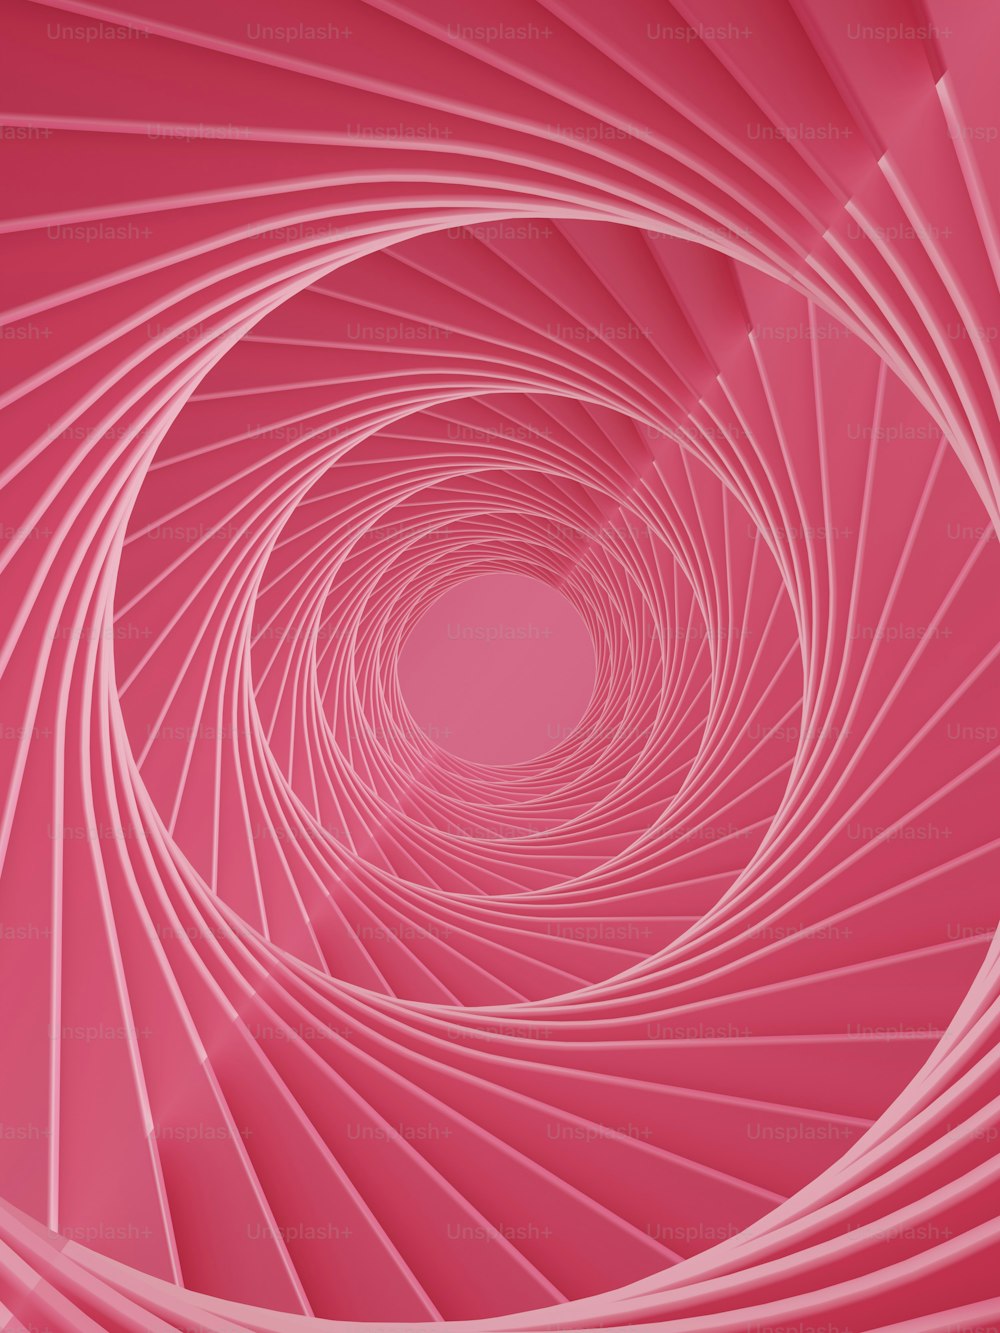 Un fond rose avec un dessin en spirale au centre